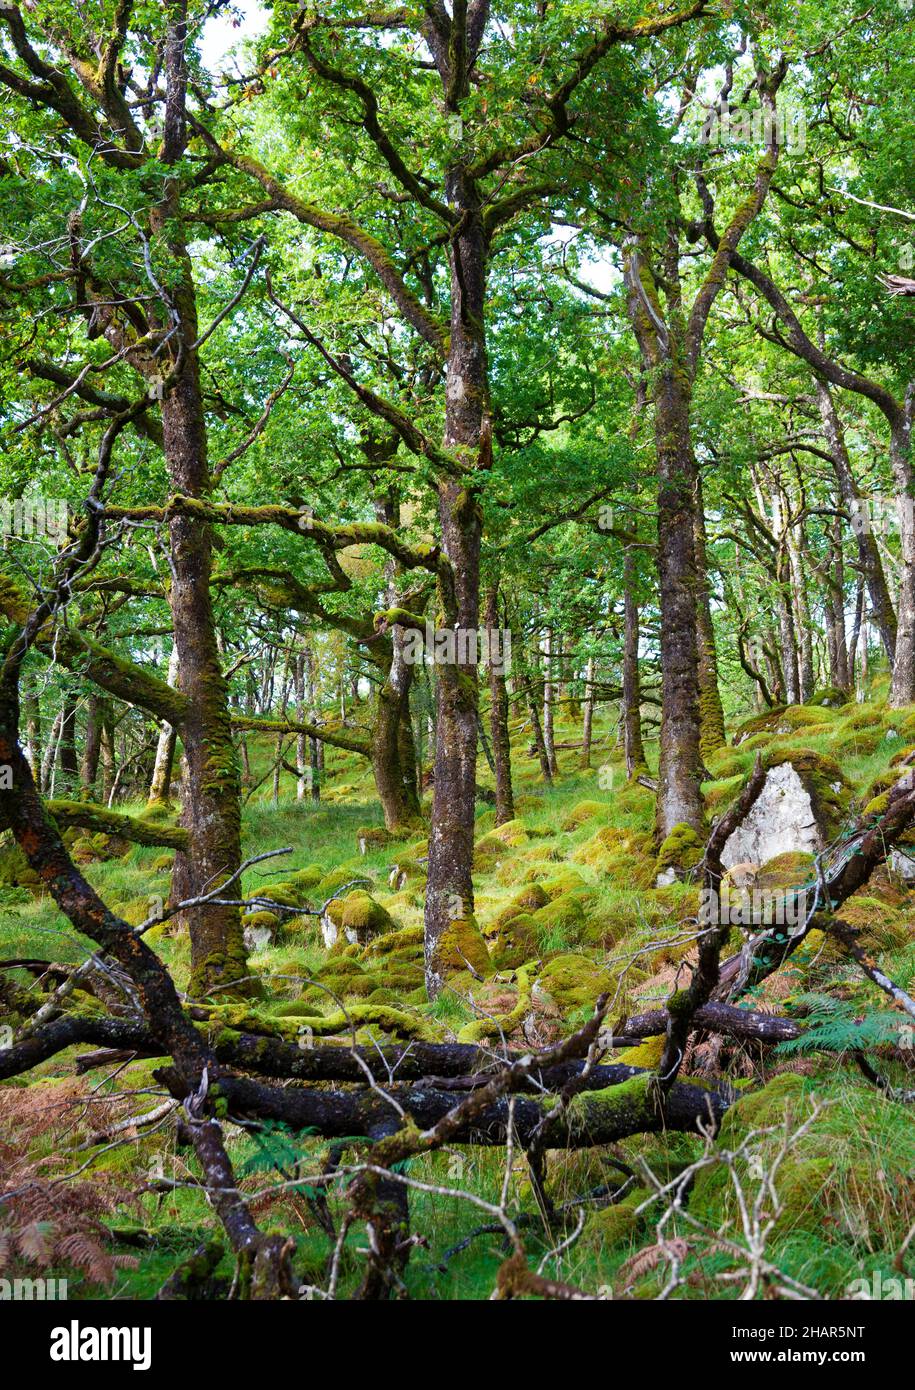 La riserva naturale di Ariundle oakwood, un'attrazione turistica in Scozia, è un residuo di antichi boschi un tempo nascosti sulla costa atlantica dell'Europa Foto Stock